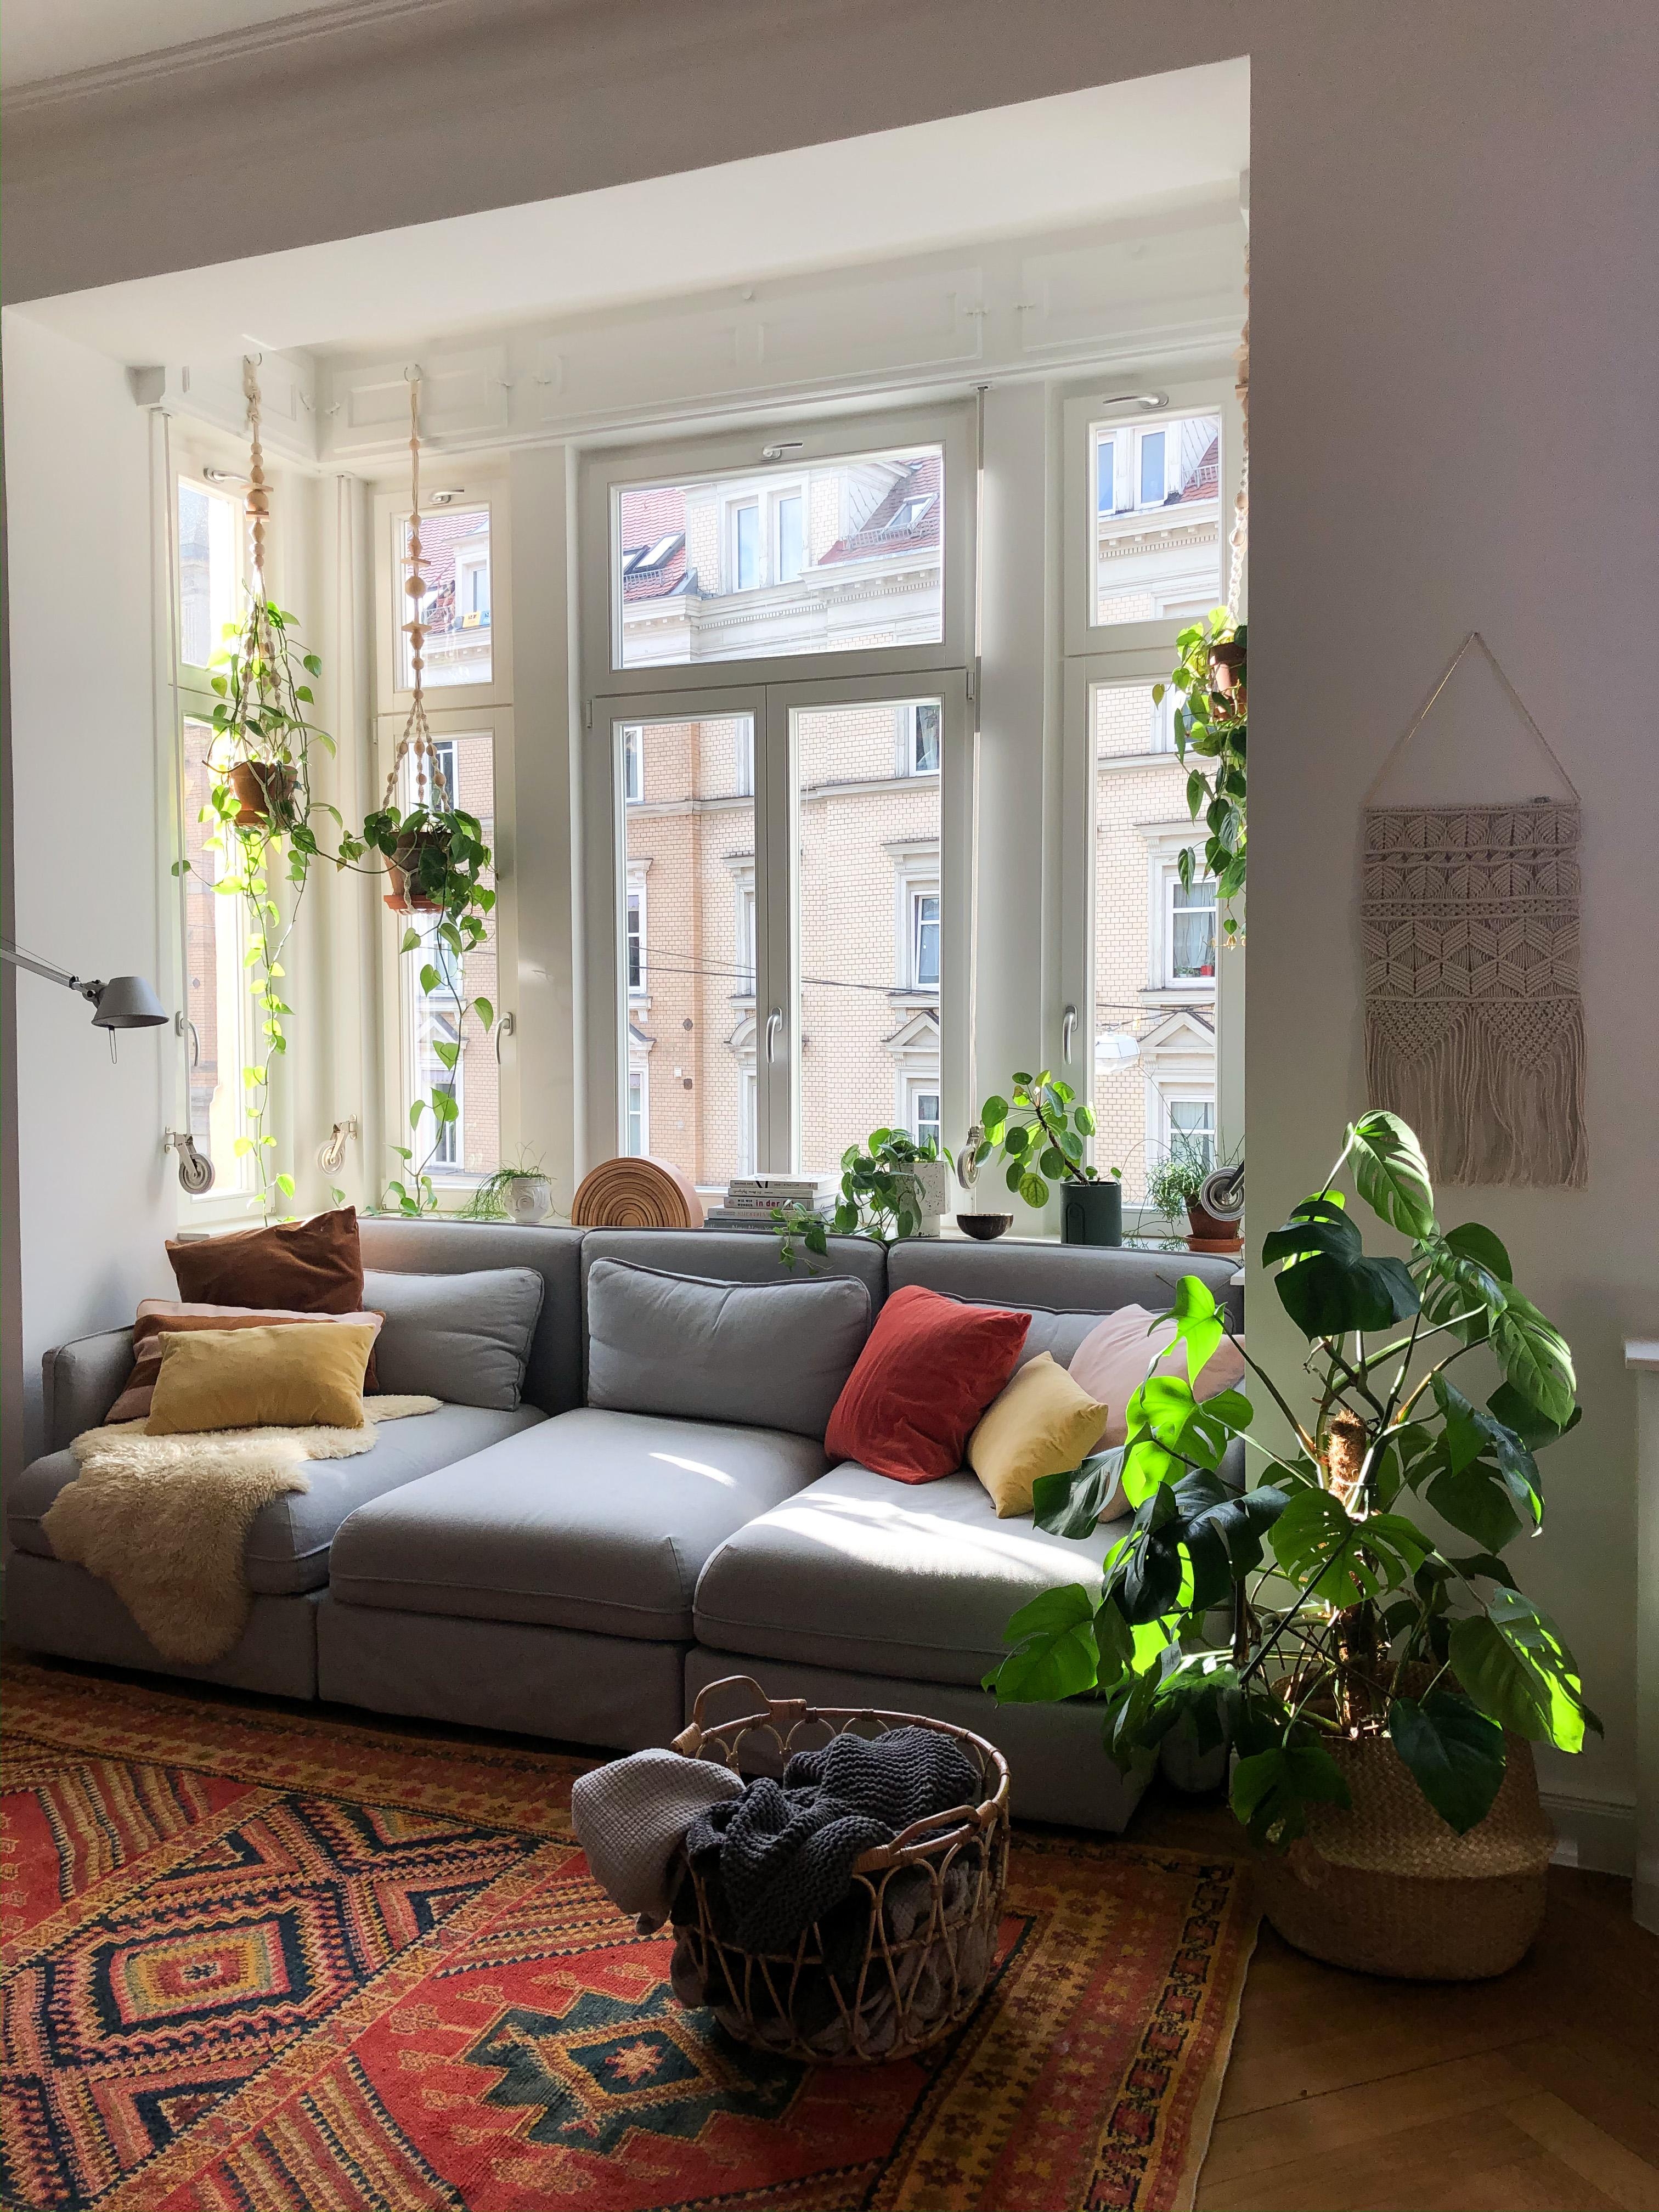 #meinlieblingsplatz in der Sonne auf der Couch 🤍 #wohnzimmer #pflanzenliebe #gemütlich #altbauliebe #pflanzenliebe